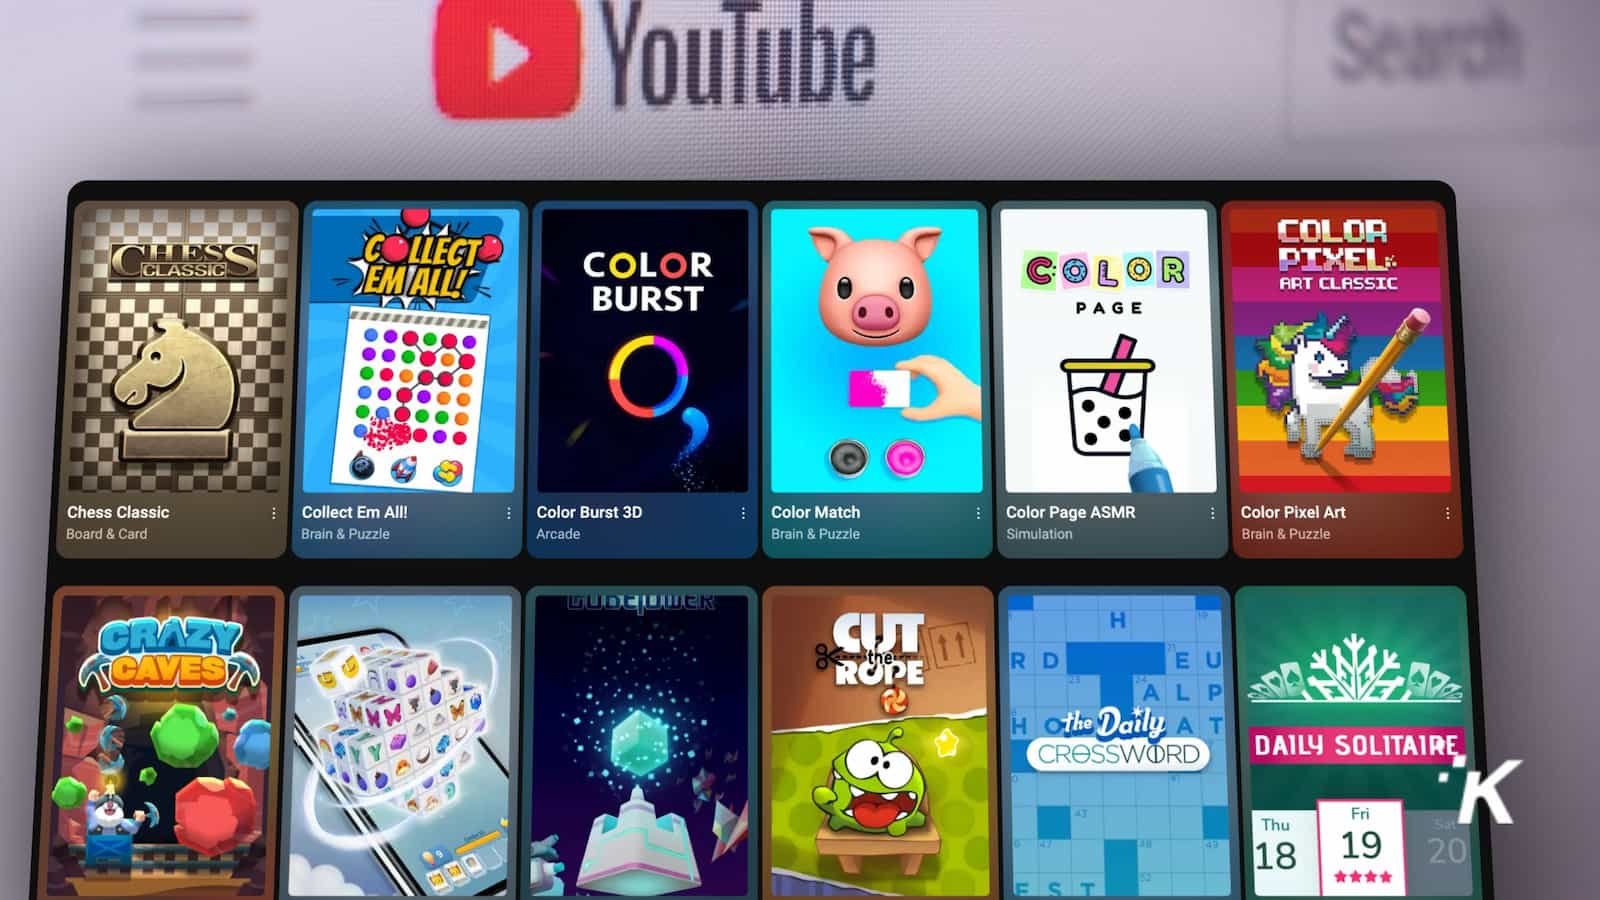 Trò chơi di động Playables của YouTube đang được triển khai cho tất cả người dùng